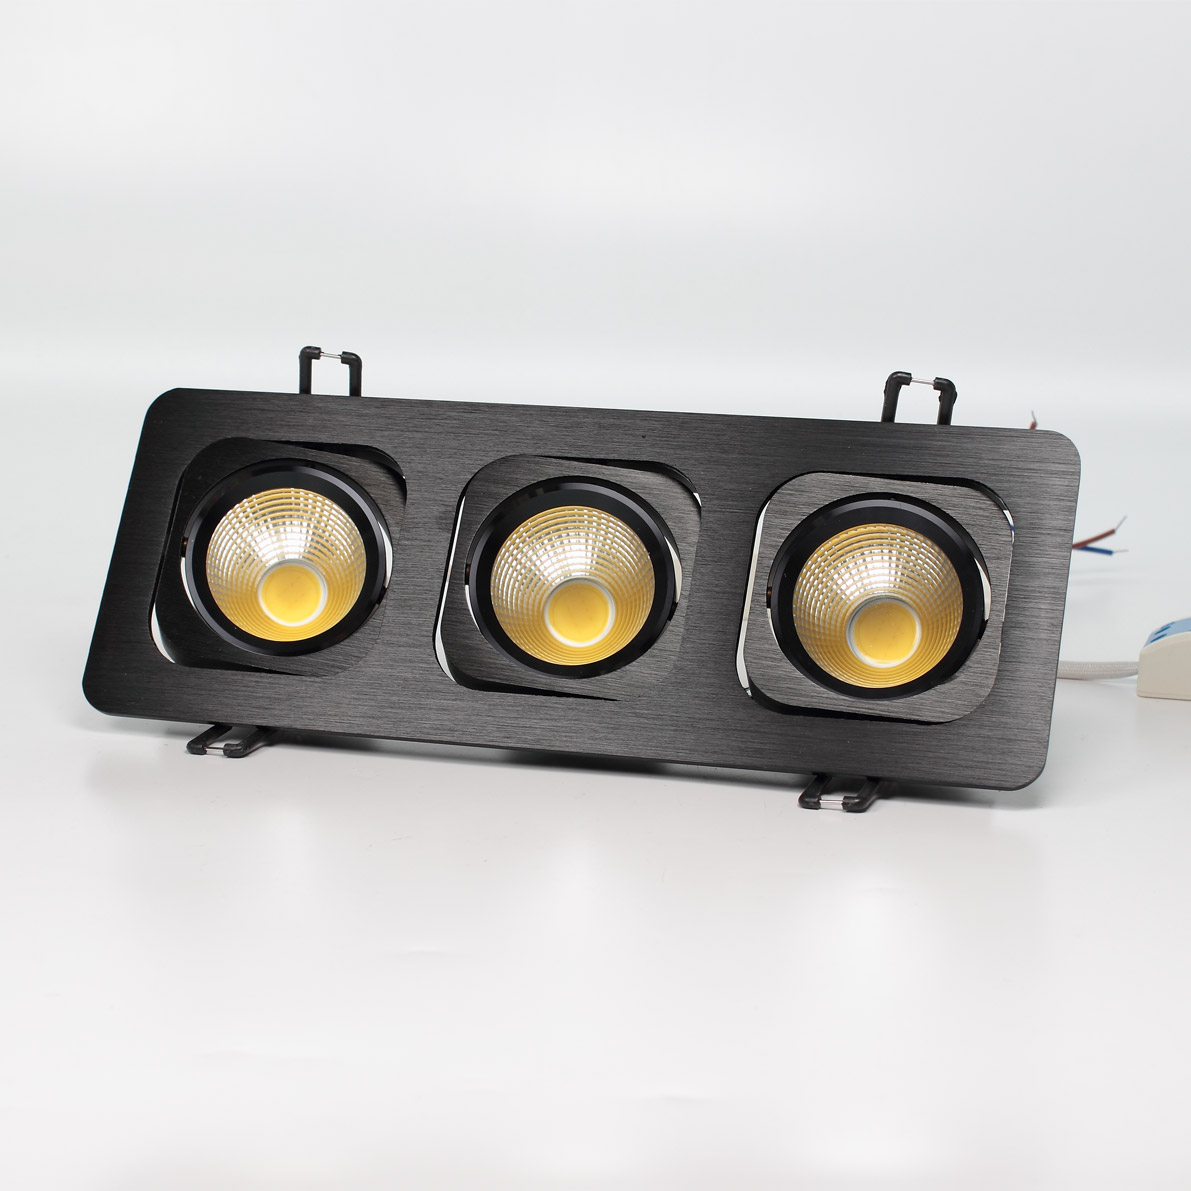 Светодиодные светильники Светодиодный светильник встраиваемый 98.1 series black housing BW159 (15W,220V,day white)